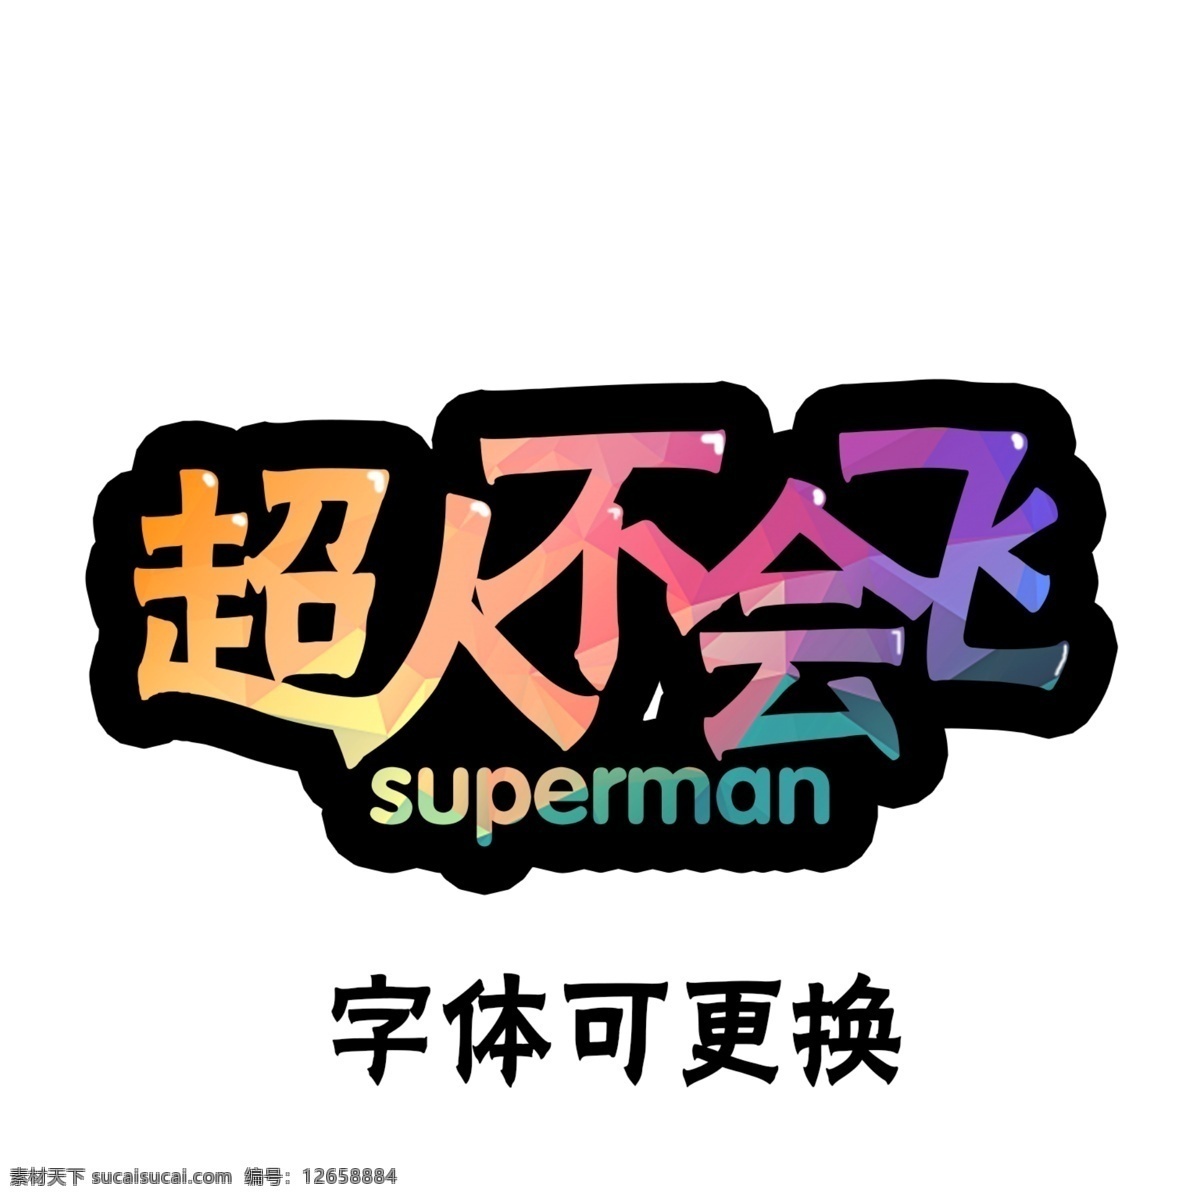 游戏 卡通 字体 卡通字体 游戏字体 超人 超人不会飞 superman 分层 白色